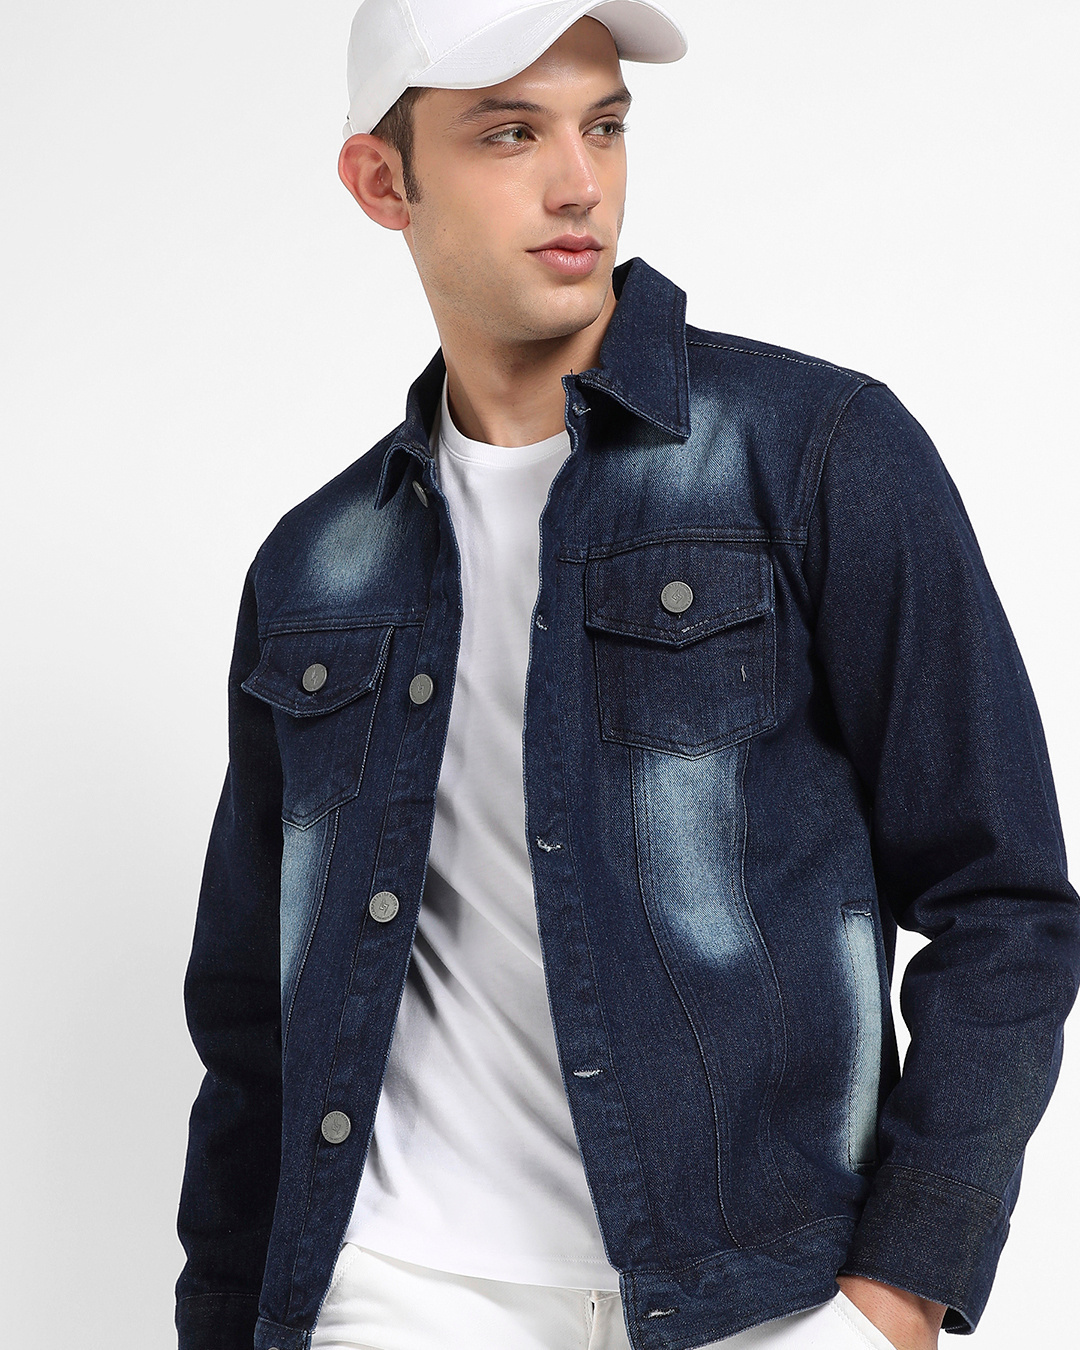 Buy Men's Blue Washed Denim Jacket for Men Online at Bewakoof